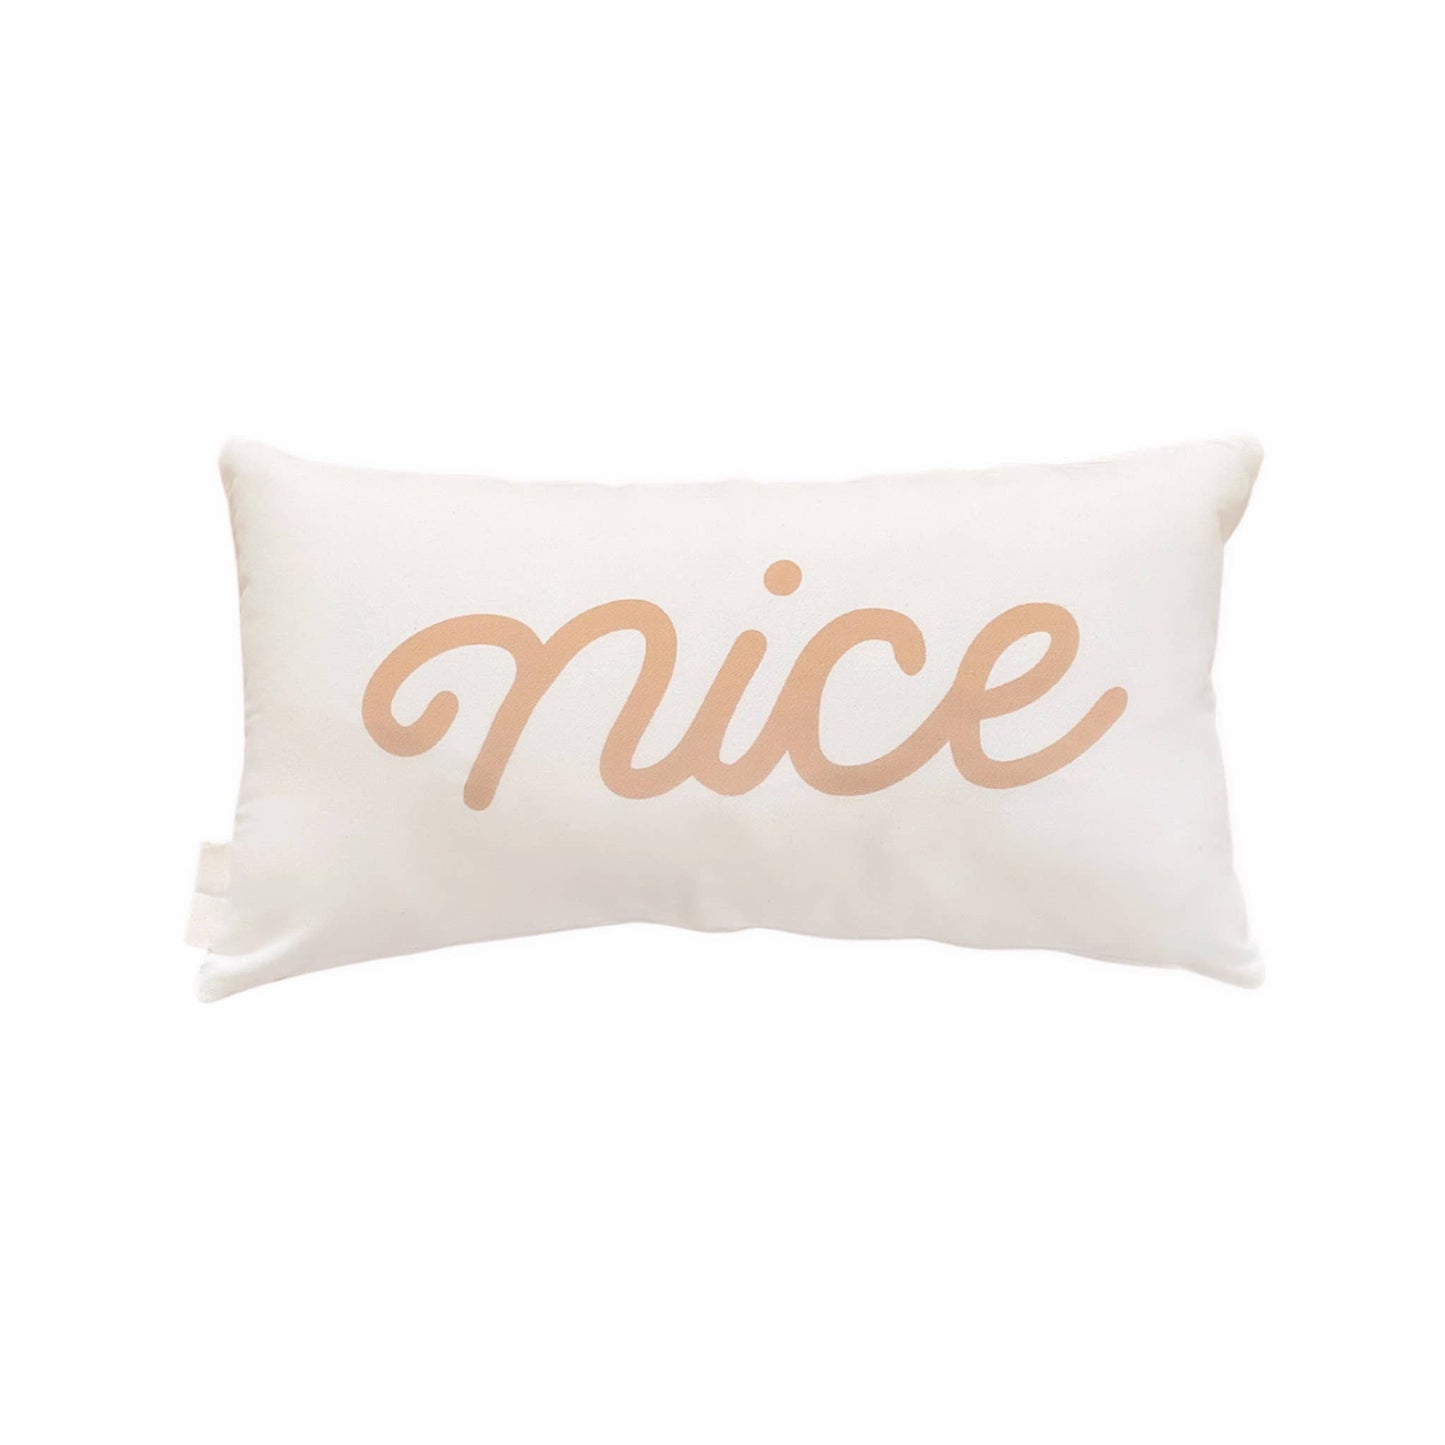 Naughty / Nice Lumbar Pillow Cover